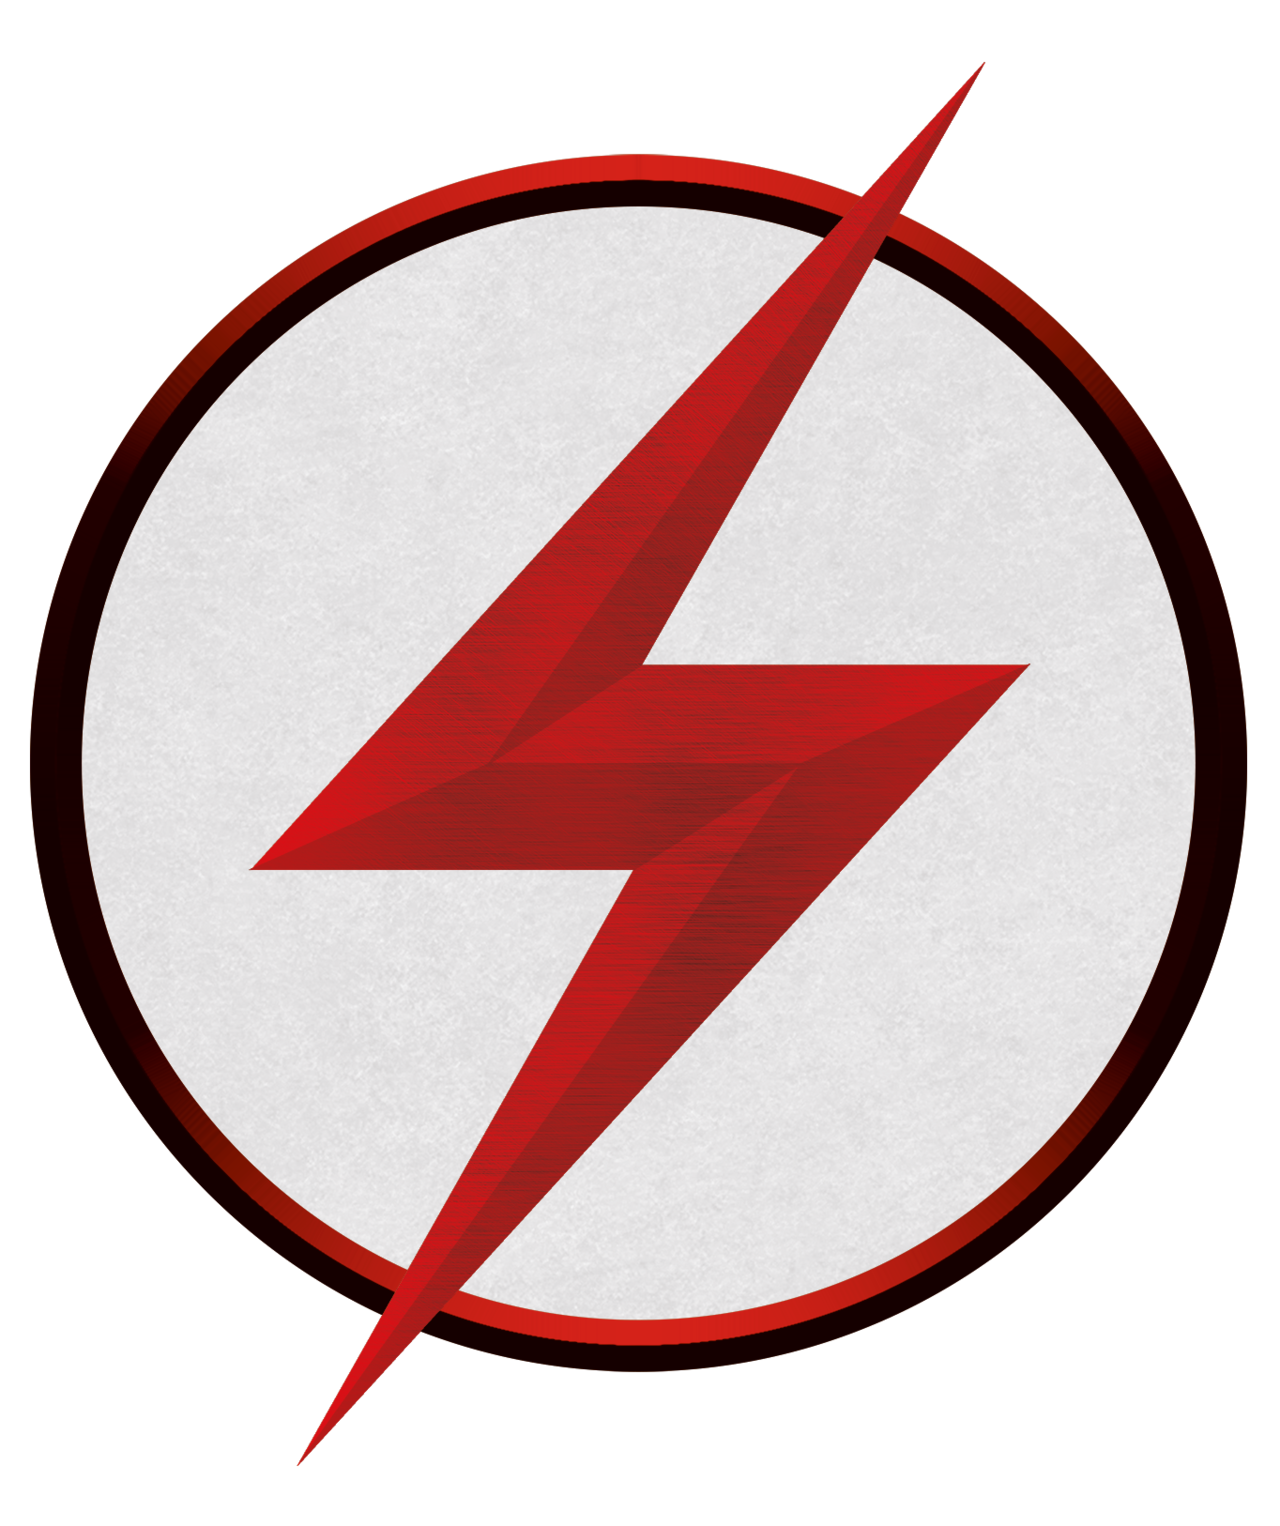 Flash clipart emblem, Flash emblem Transparent FREE for download on